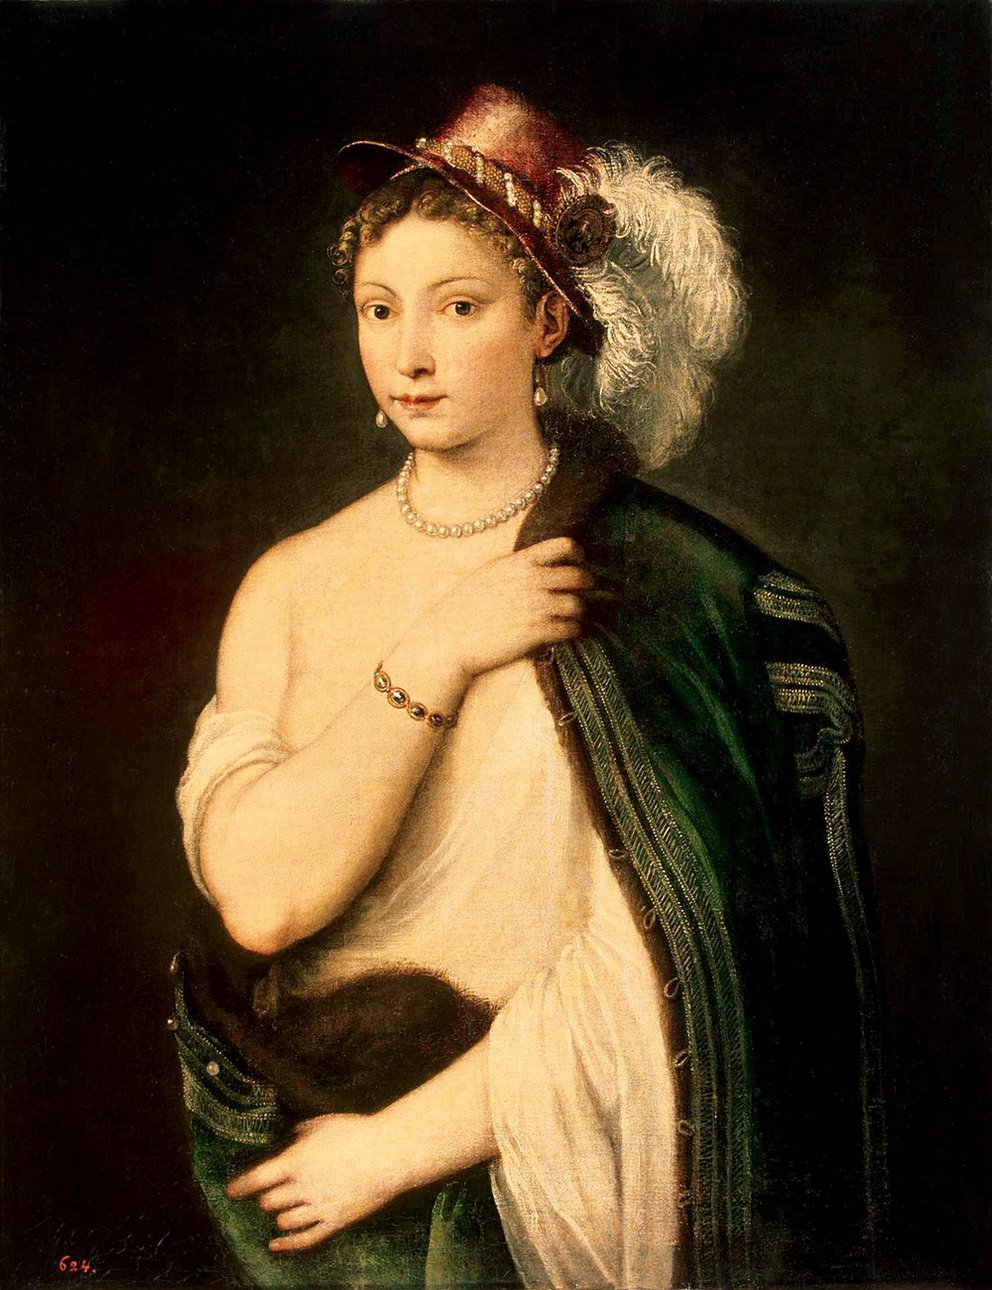 Тициан. "Портрет молодой женщины". Около 1536